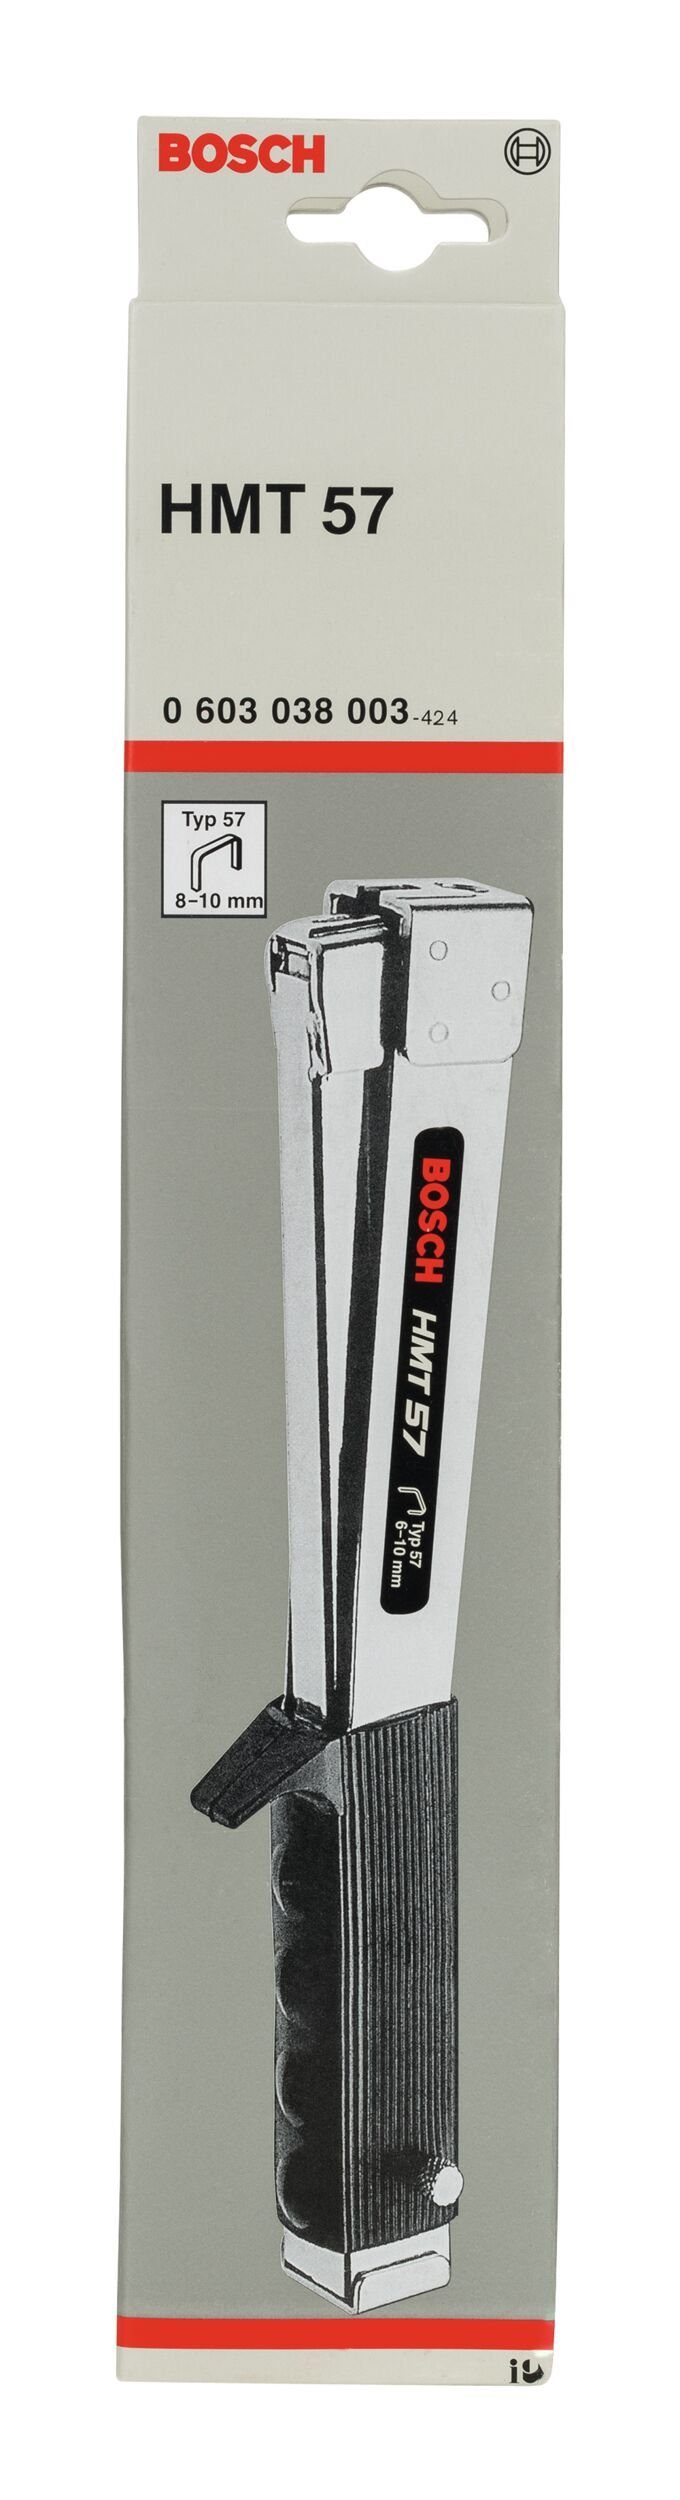 Professional im - Schlagauslösung Elektro-Tacker 10 Bosch 6 57, mm - mit HMT Hammertacker Karton